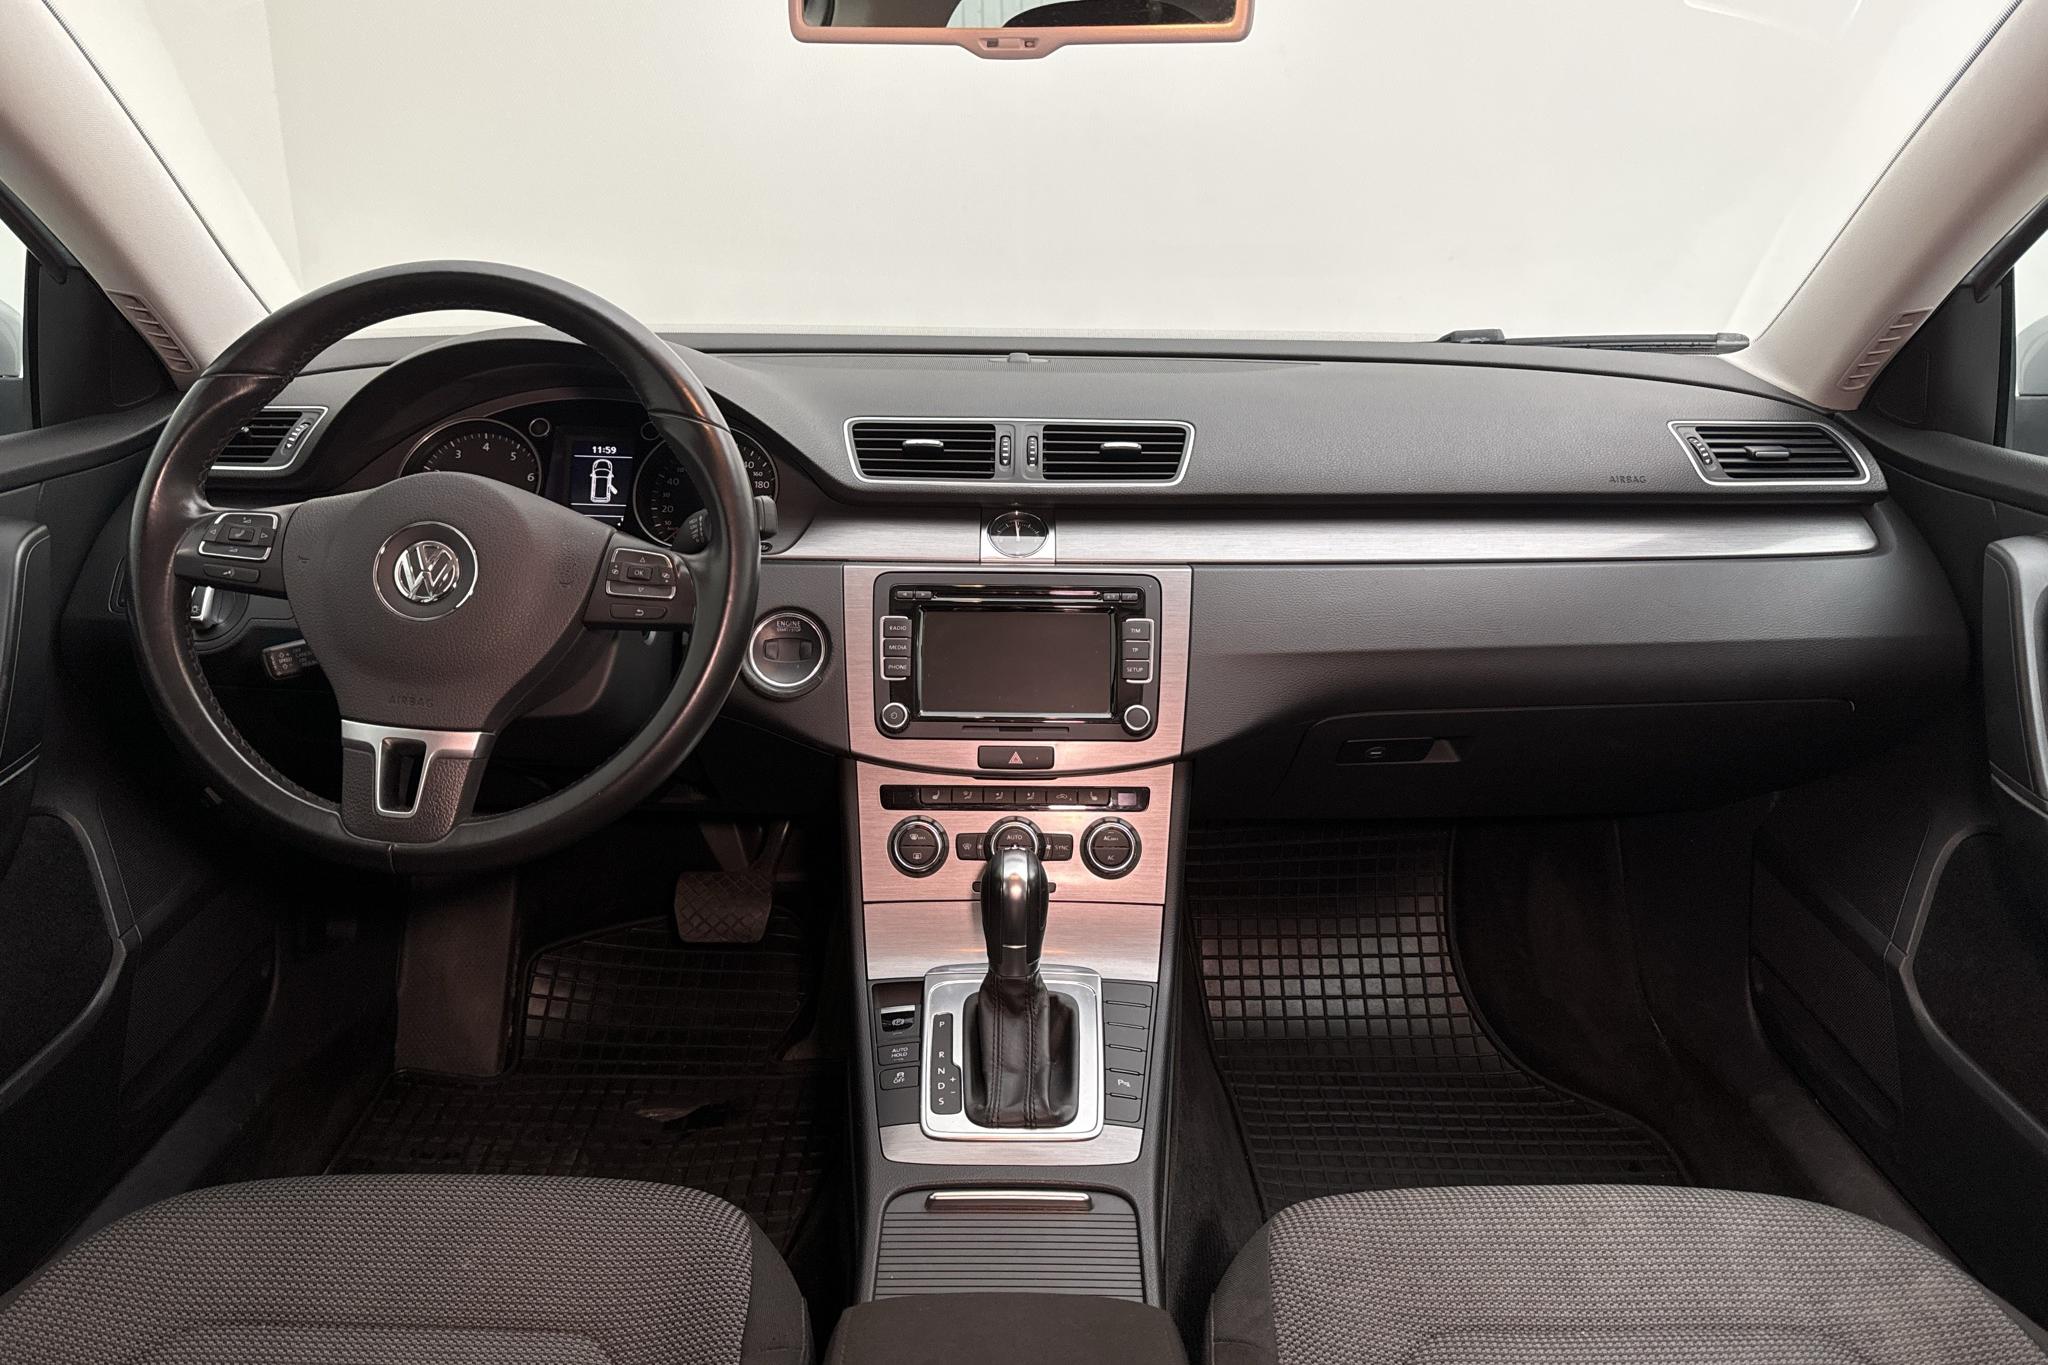 VW Passat 1.4 TSI EcoFuel Variant (150hk) - 186 300 km - Automaattinen - hopea - 2012